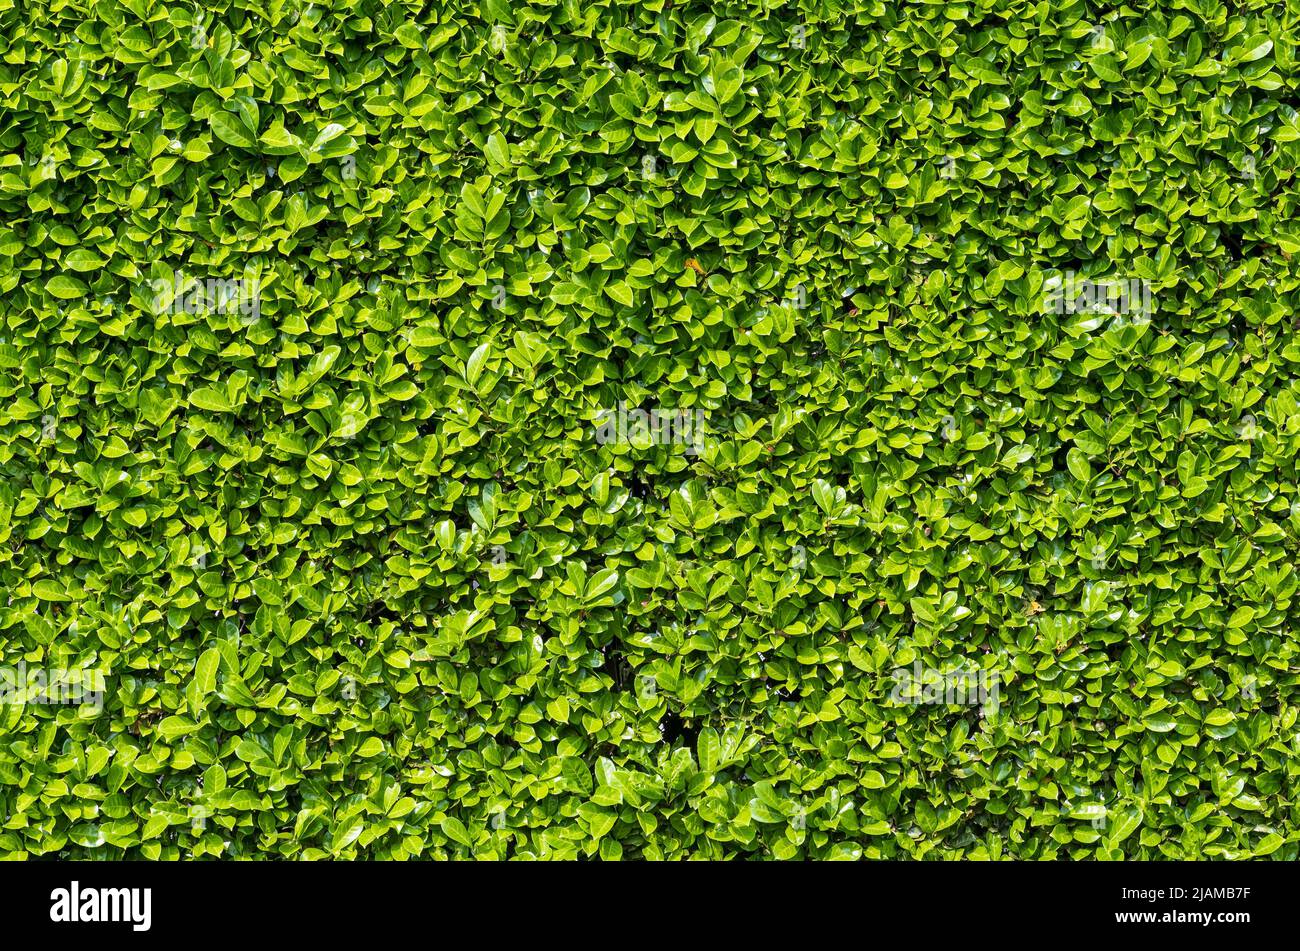 Green shrub hedge, fresh green leaves for natural vegetation background. Stock Photo